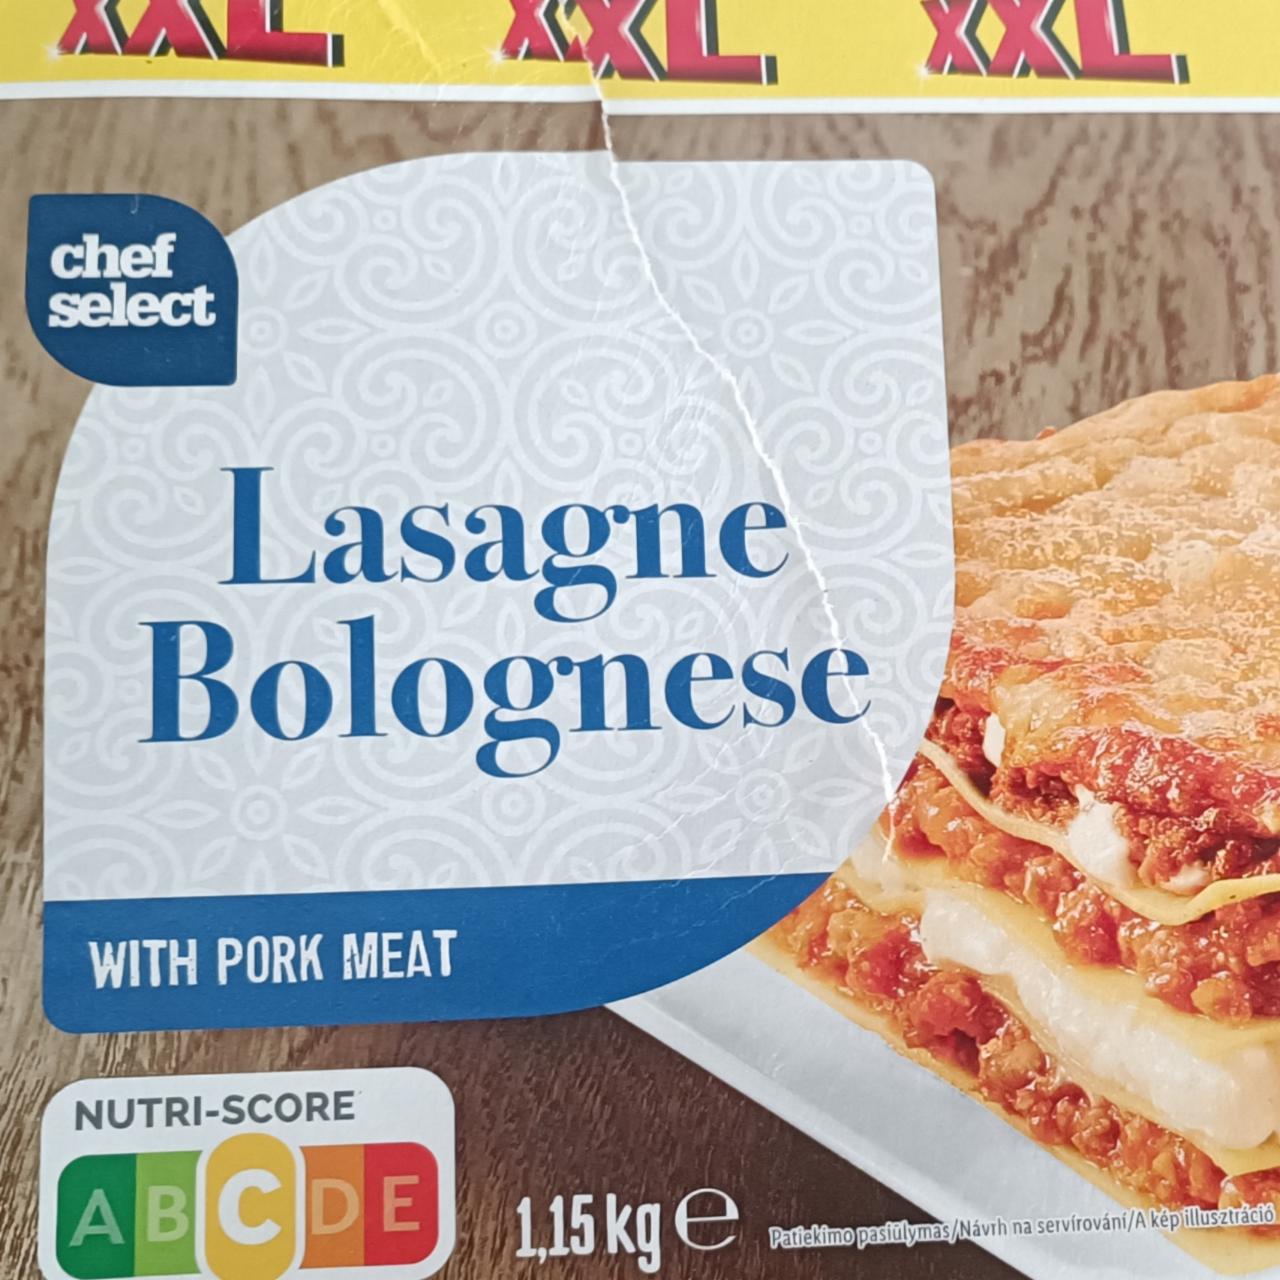 nutriční hodnoty pork with kJ - Select Chef kalorie, a Bolognese Lasagne